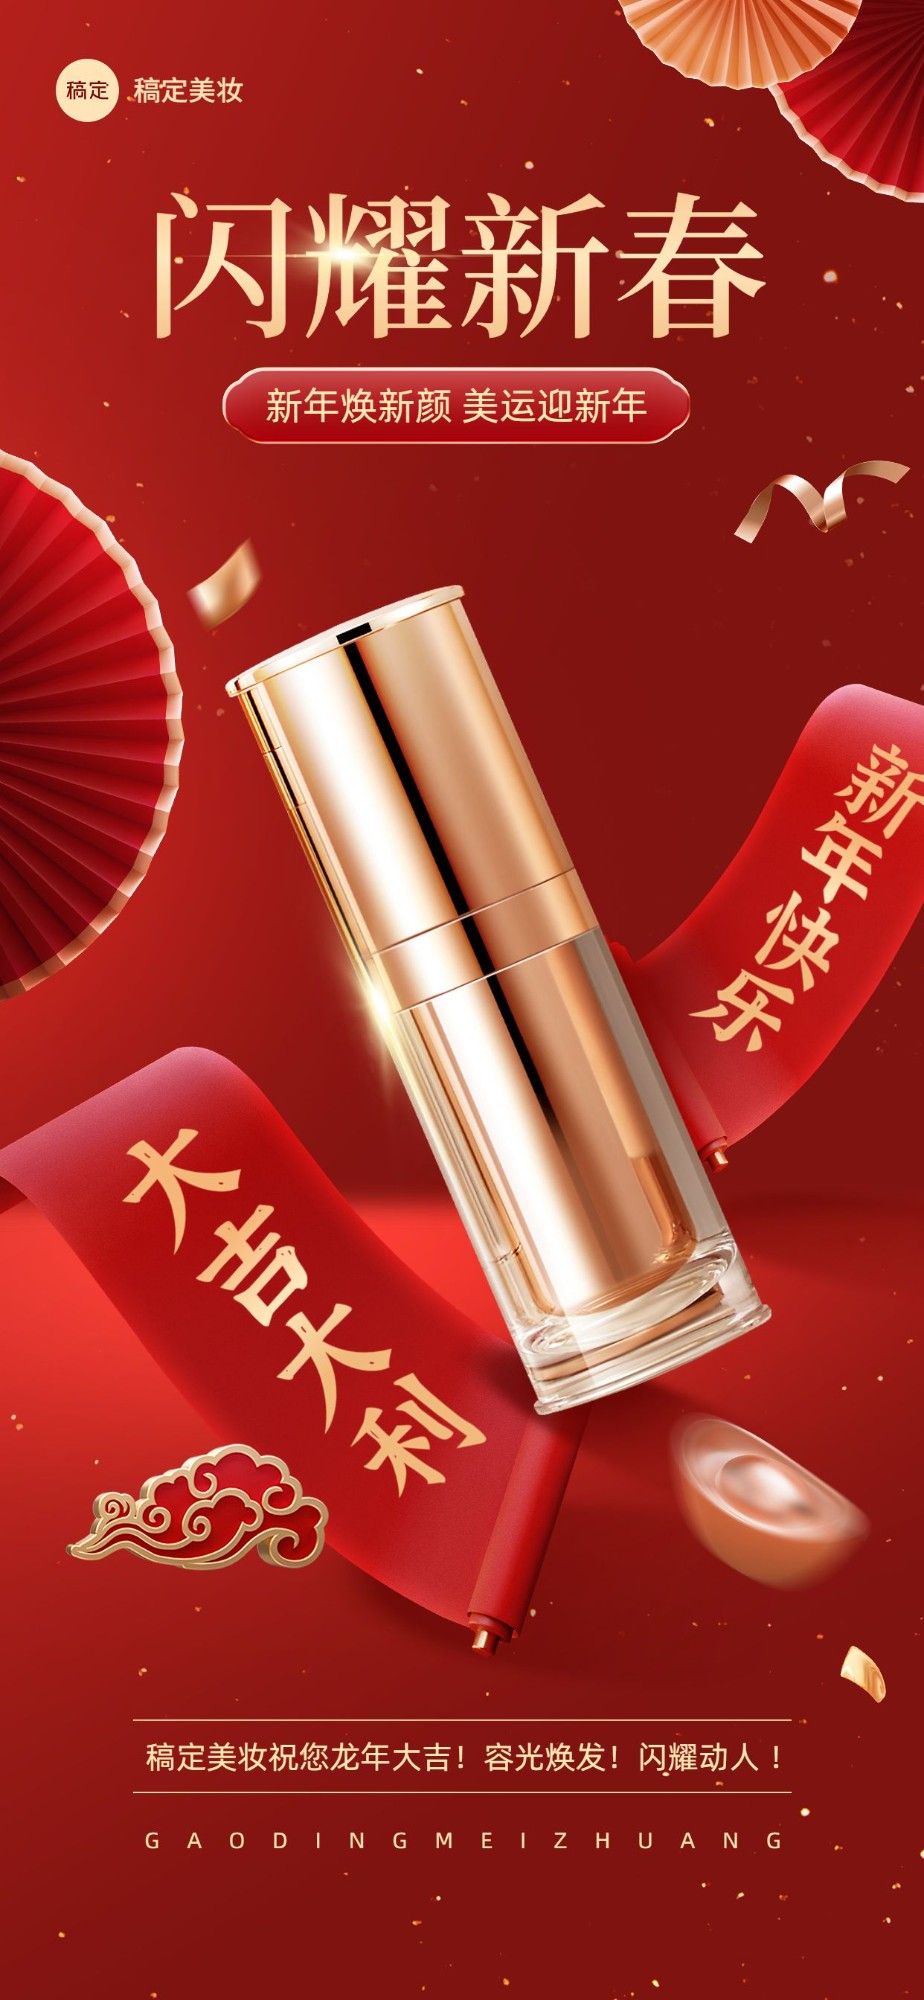 春节美容美妆节日营销产品展示悬浮喜庆感全屏竖版海报